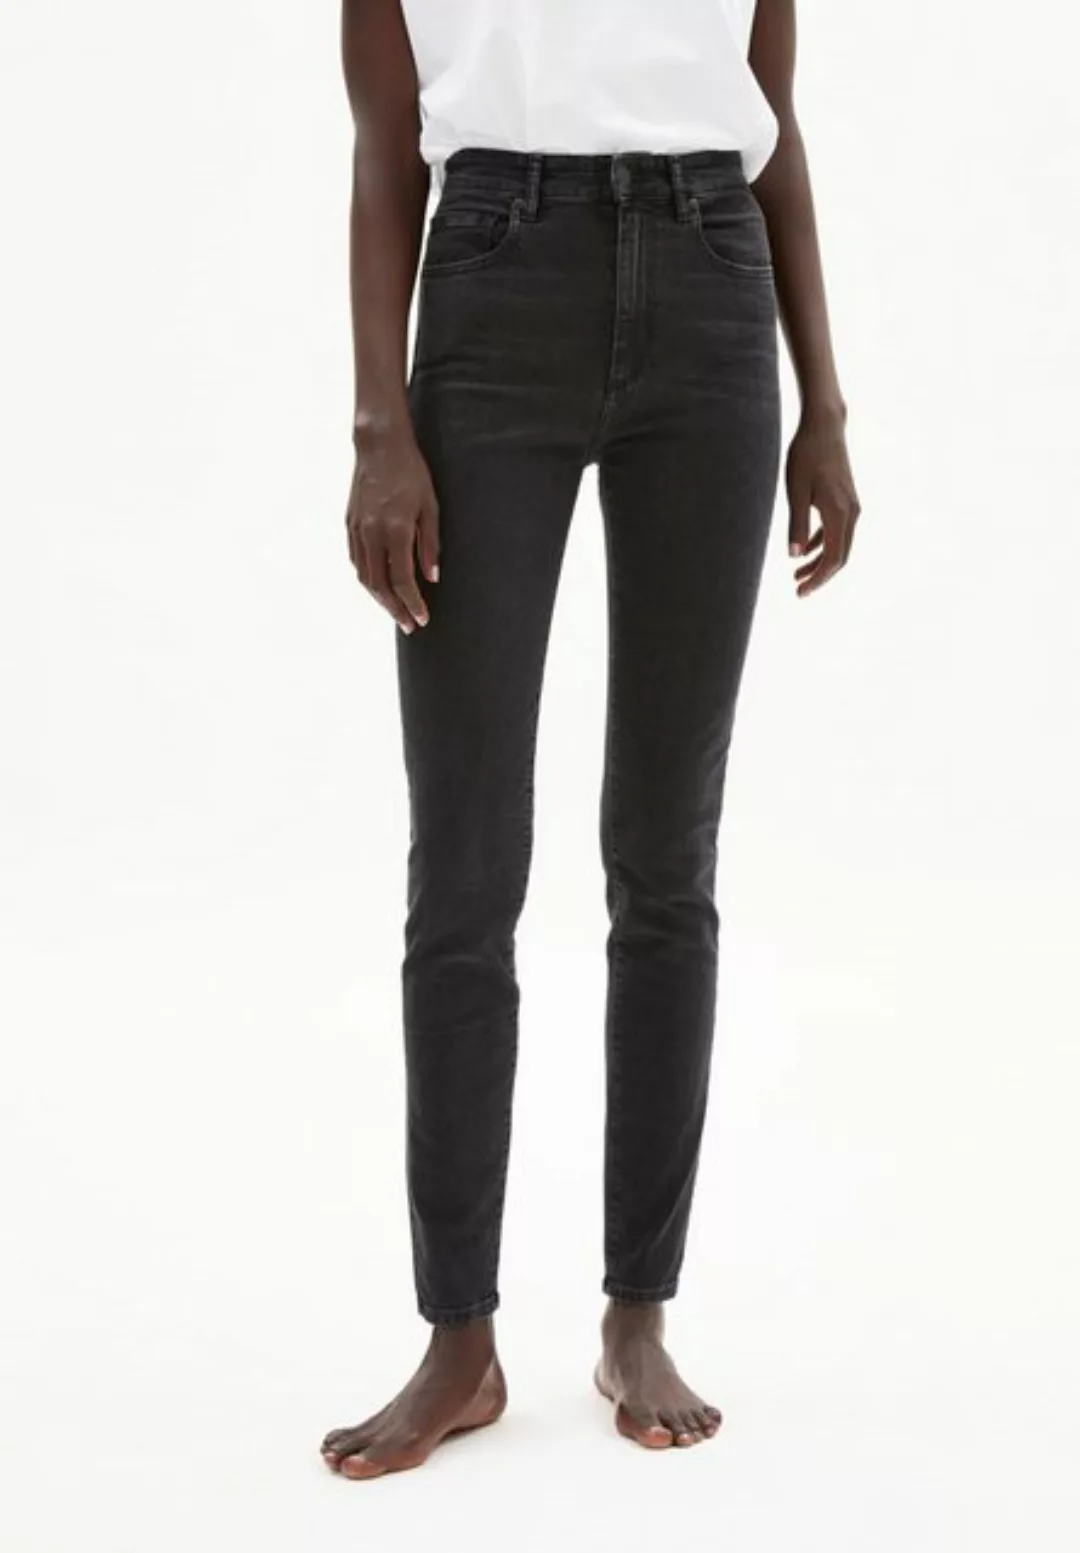 Jeans INGAA in moon grey von ARMEDANGELS günstig online kaufen